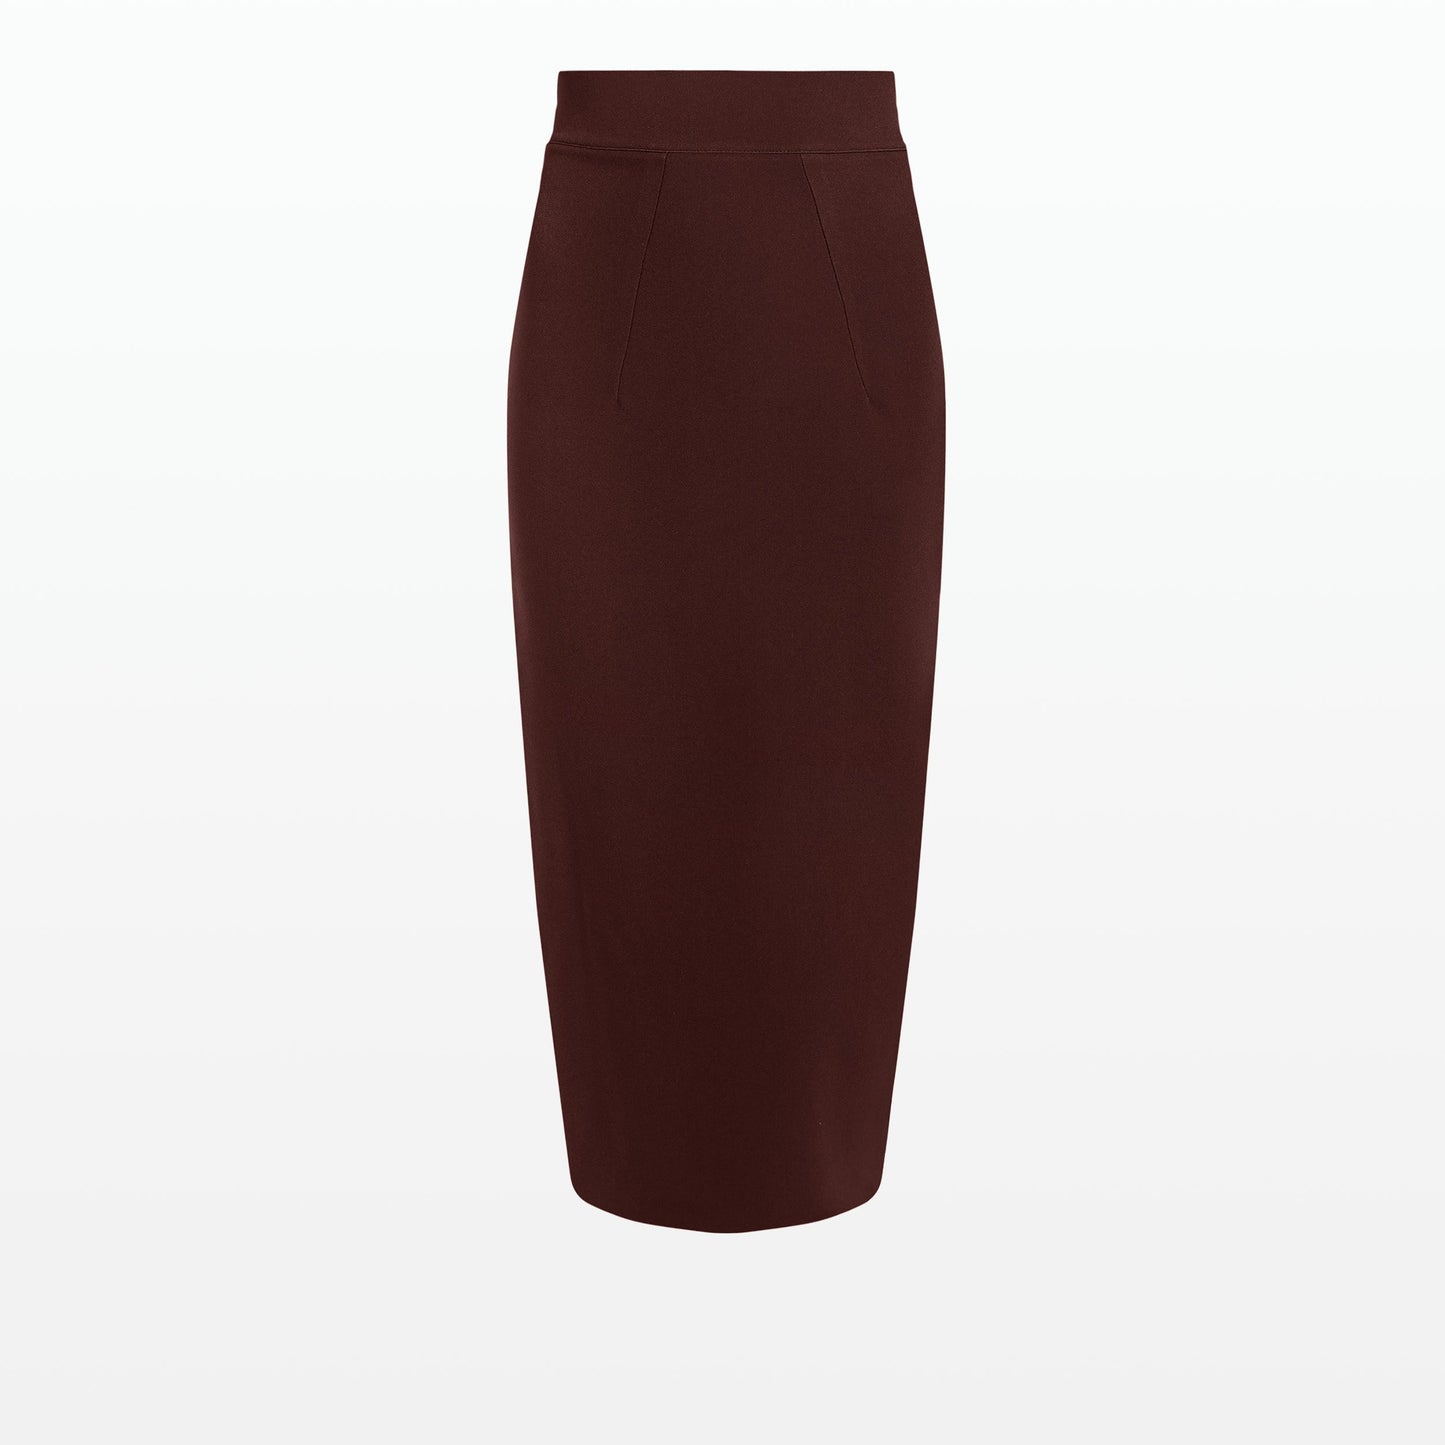 Hokoku Pecan Brown Pencil Skirt